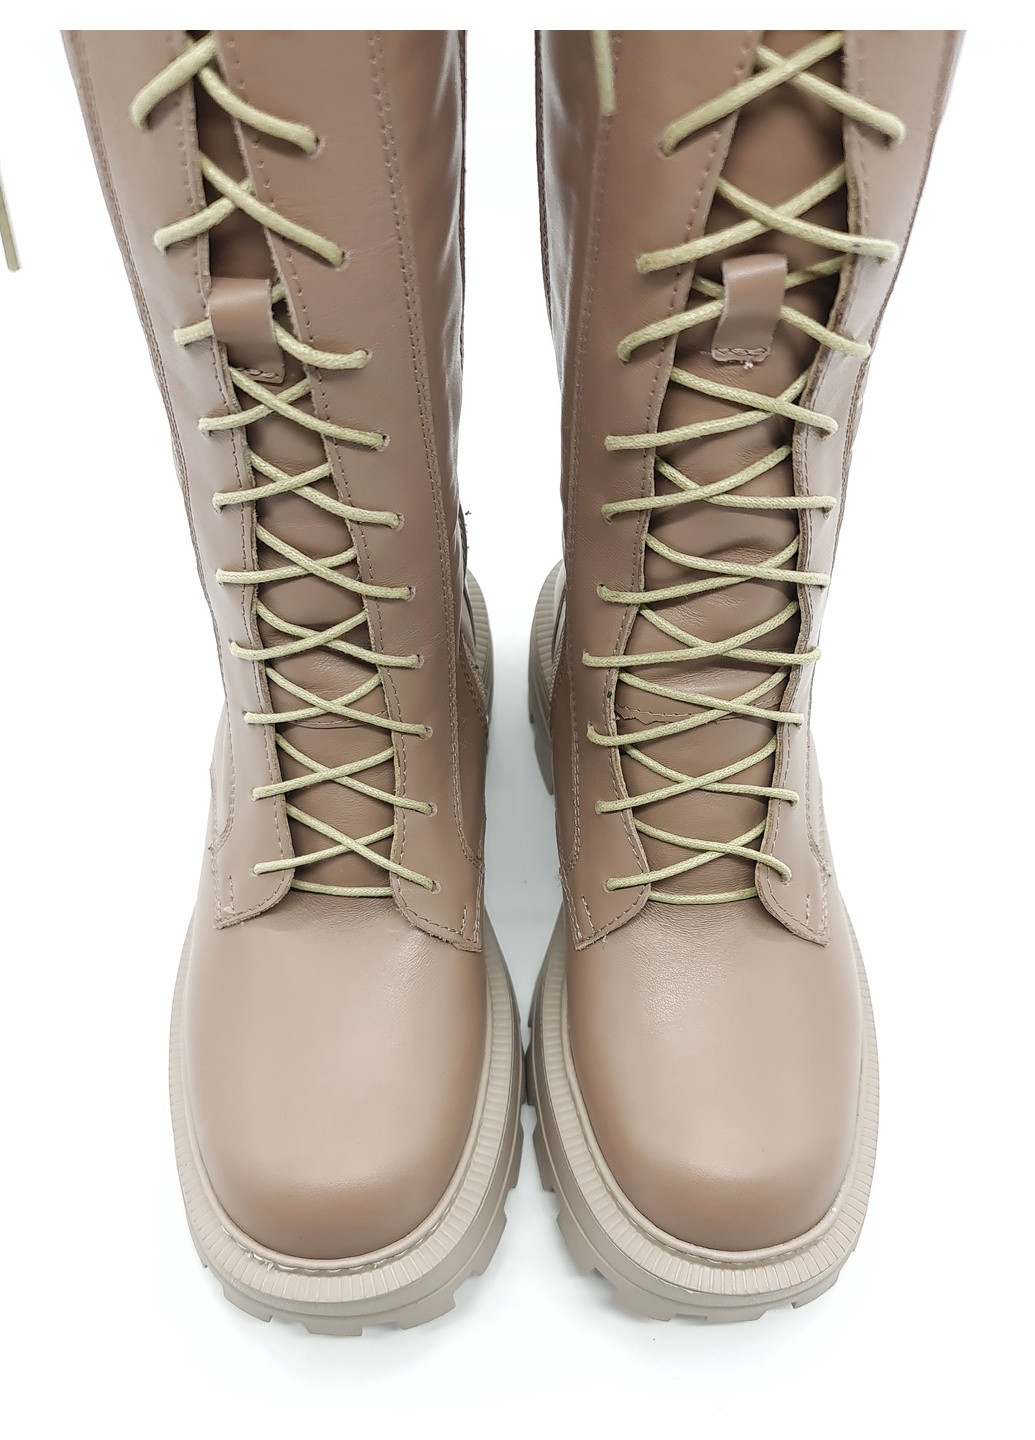 жіночі чоботи єврозима мутон шкіряні p-14-7 255 мм 40(р) patterns